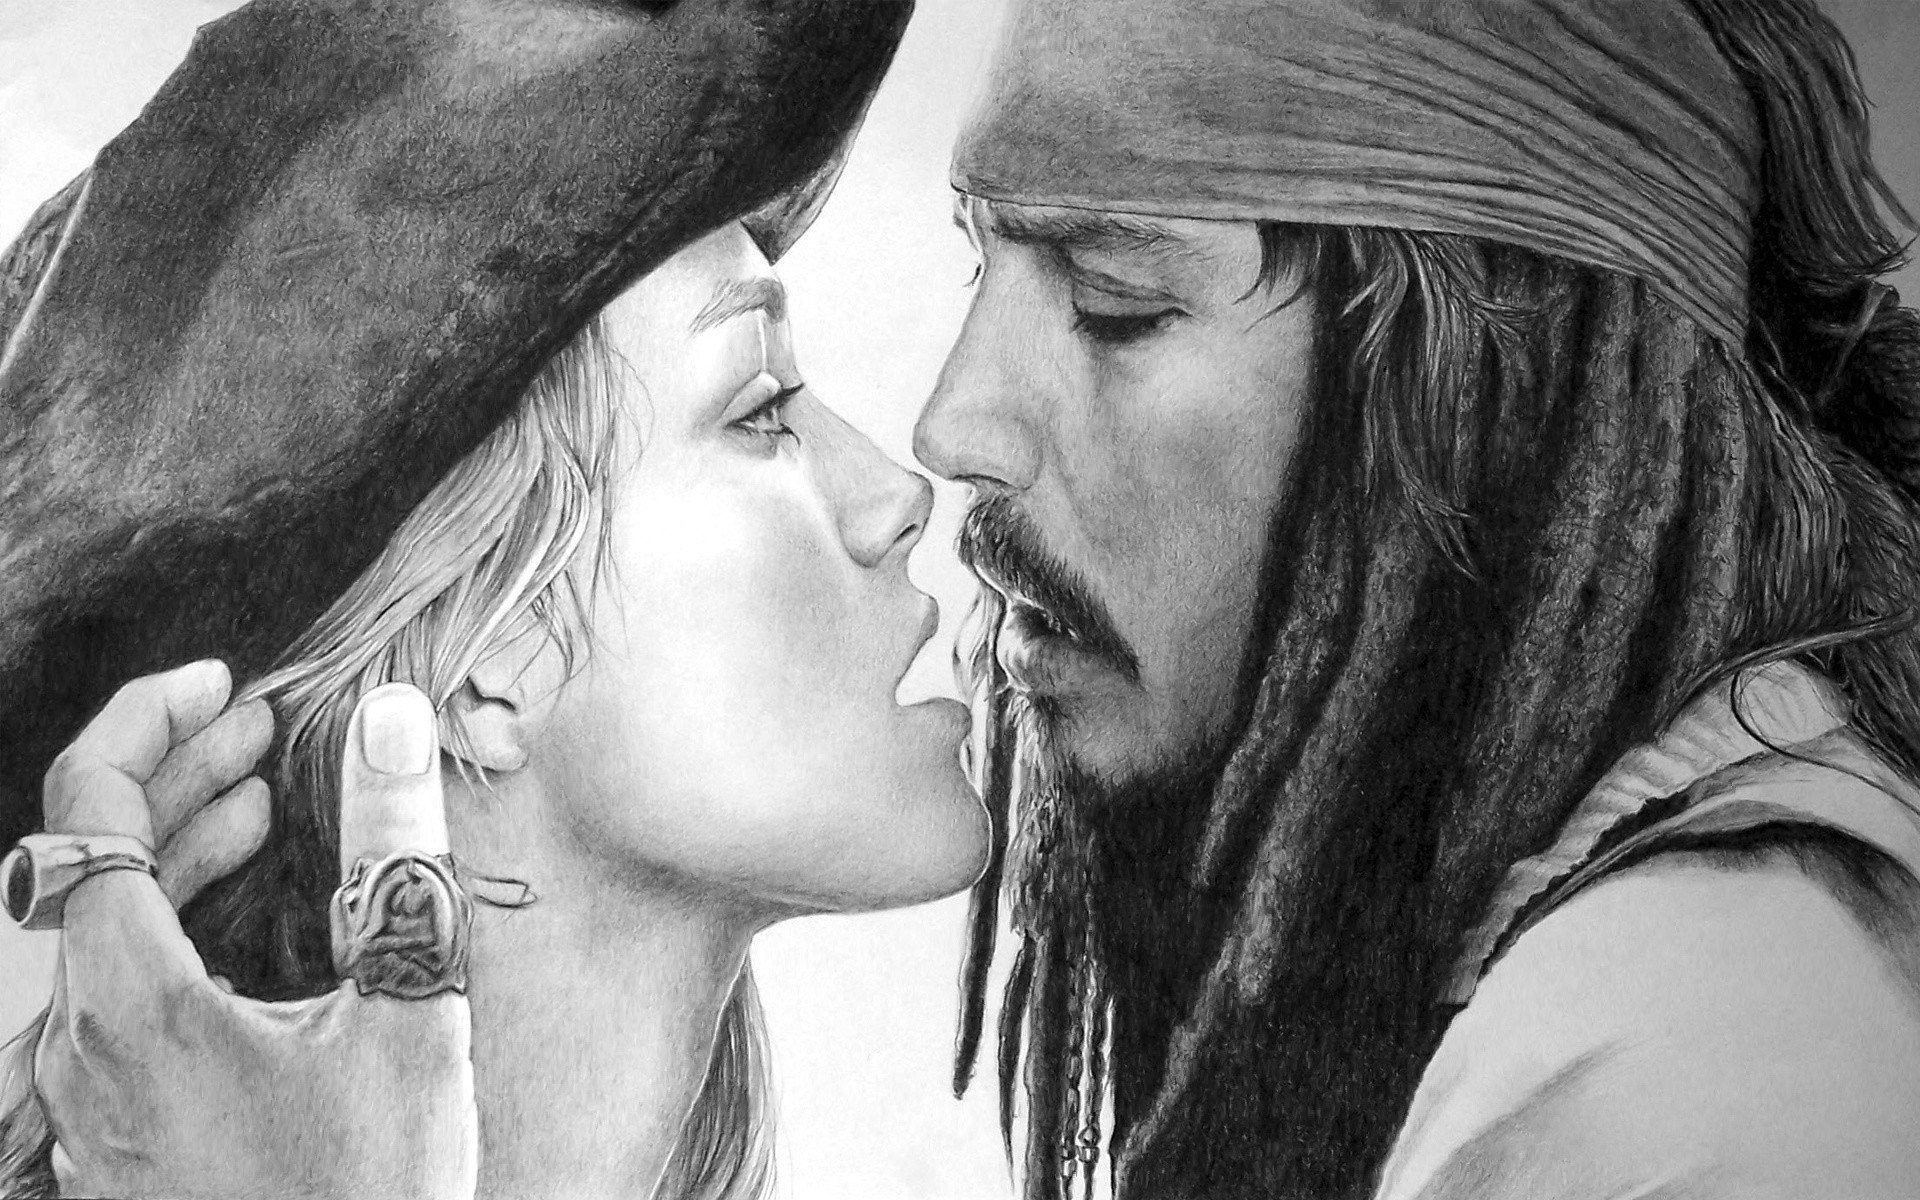 Captain Jack Sparrow Wallpapers  Top 30 Best Captain Jack Sparrow  Wallpapers Download